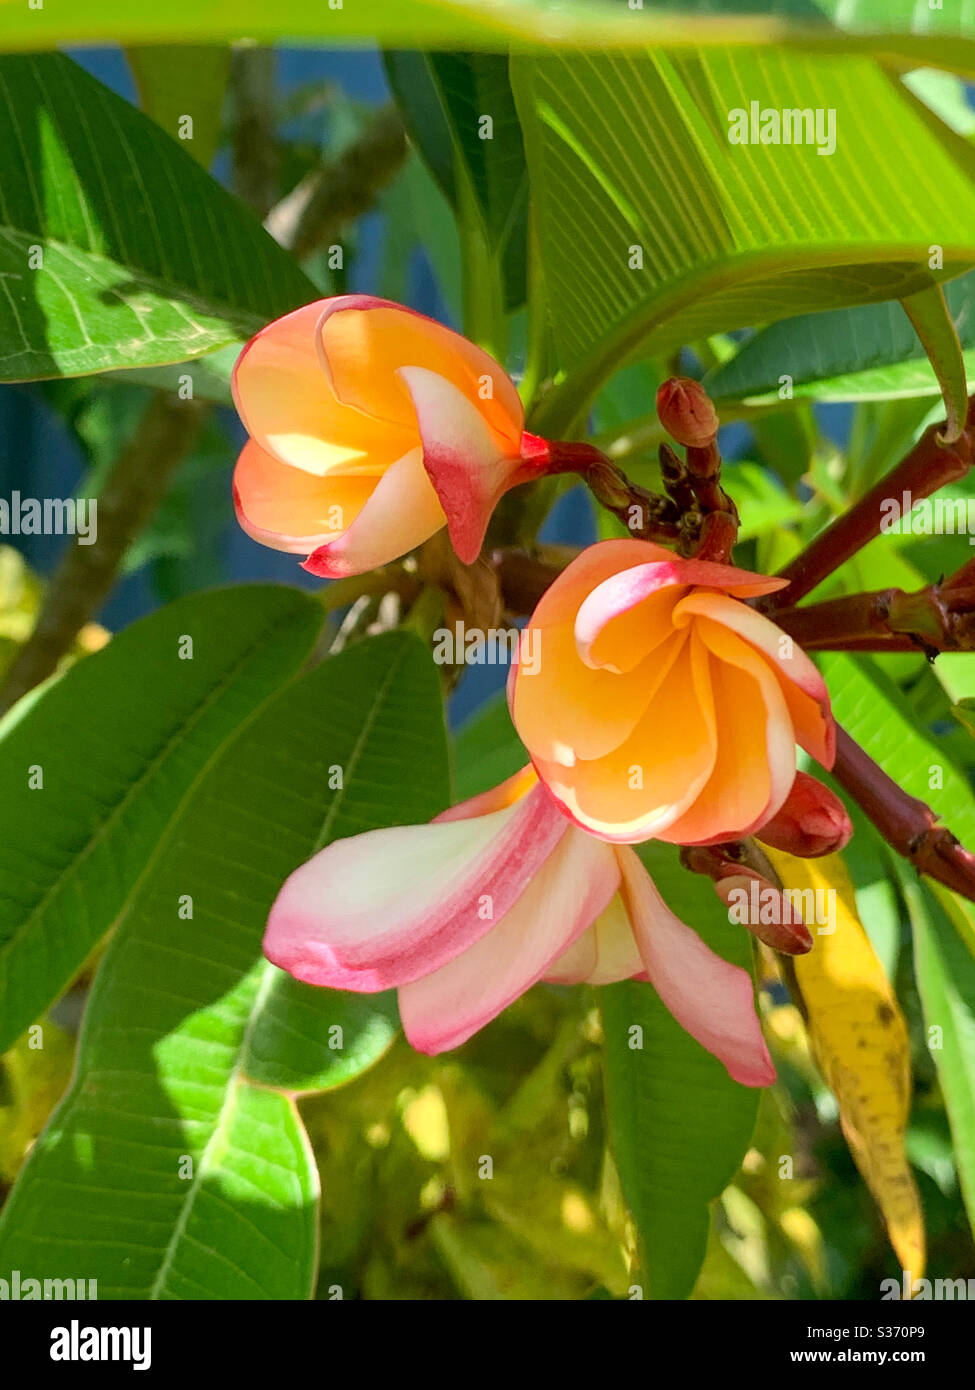 Spirali di fiori e boccioli arancioni e rosa di Frangipani o Plumeria in fase di fioritura e apertura Foto Stock